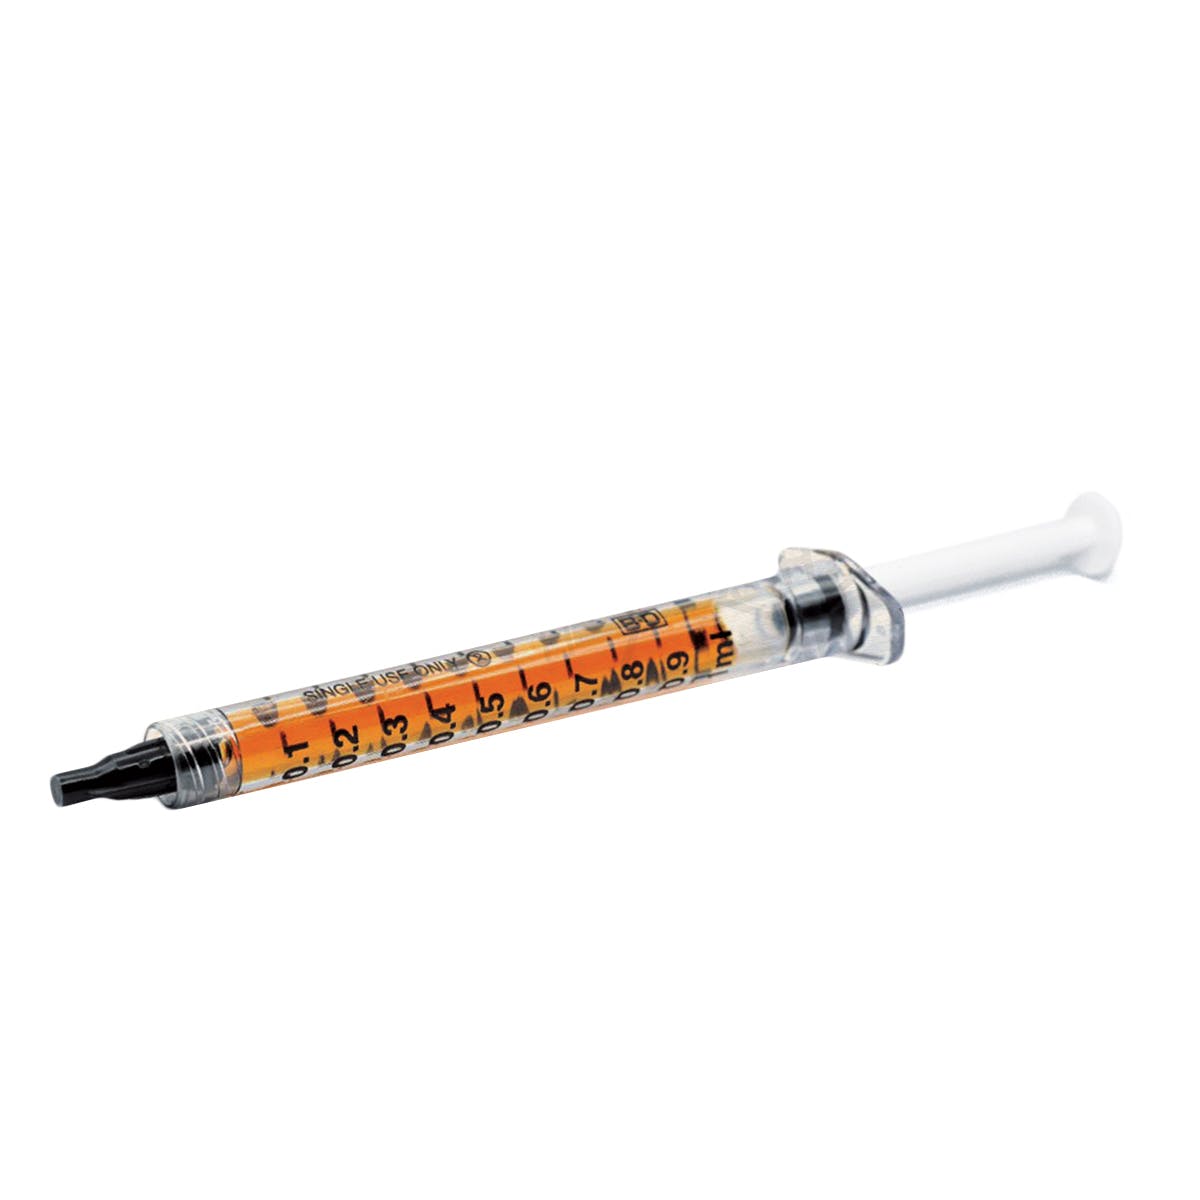 Raw CBDA Oil Syringe